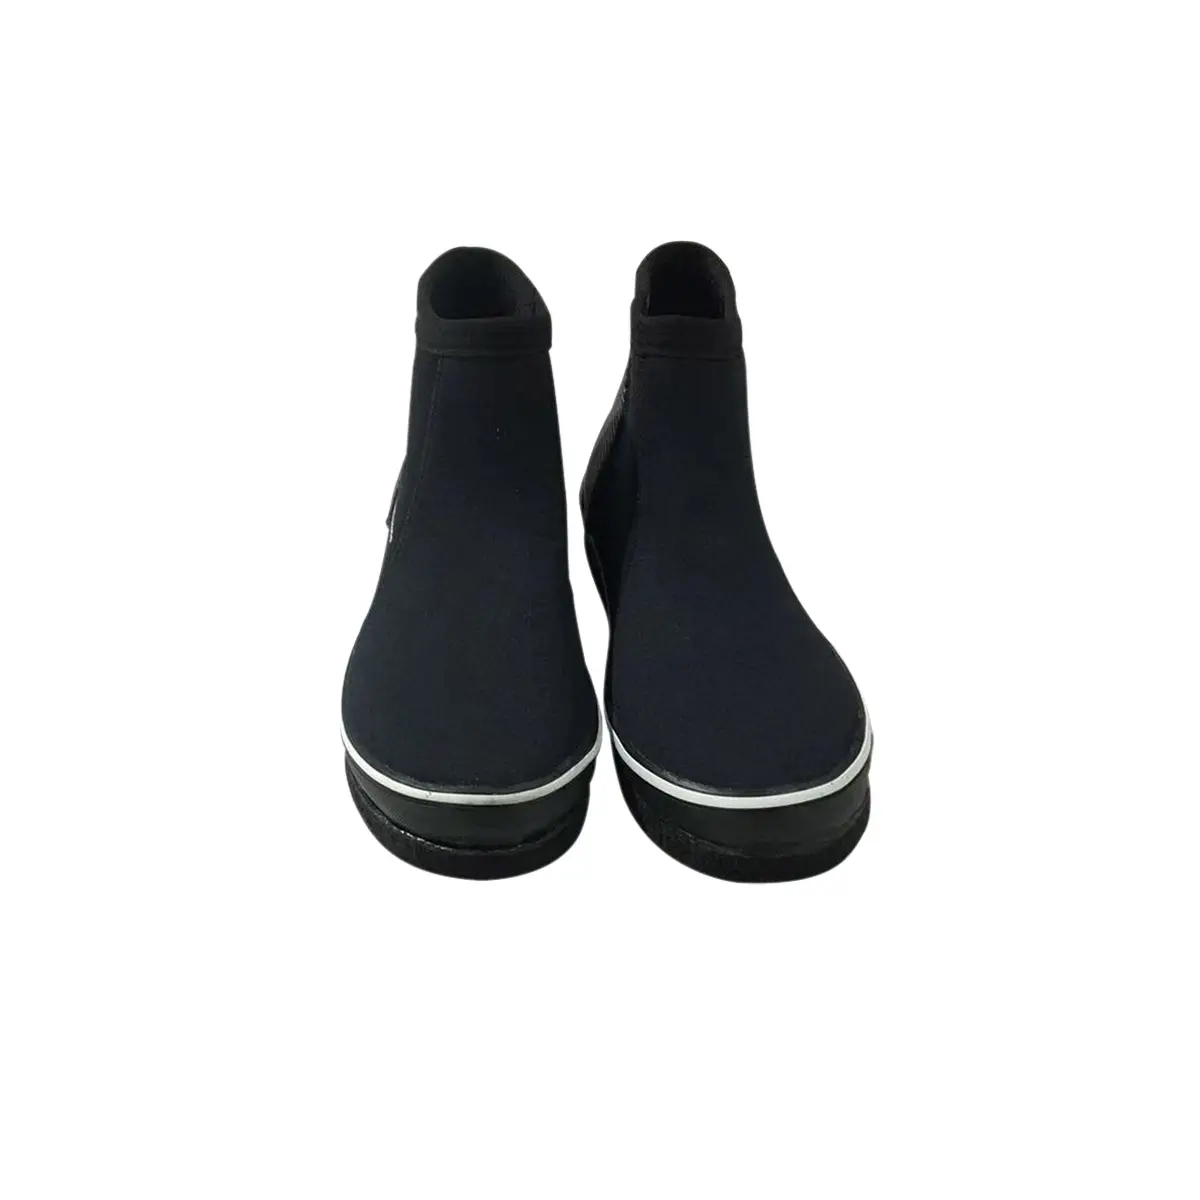 Cina fornitore vendita scarpe di gomma stivali feltro lingua pad impermeabile a monte vulcanizzato scarpe da acqua Scuba Diving Shoes